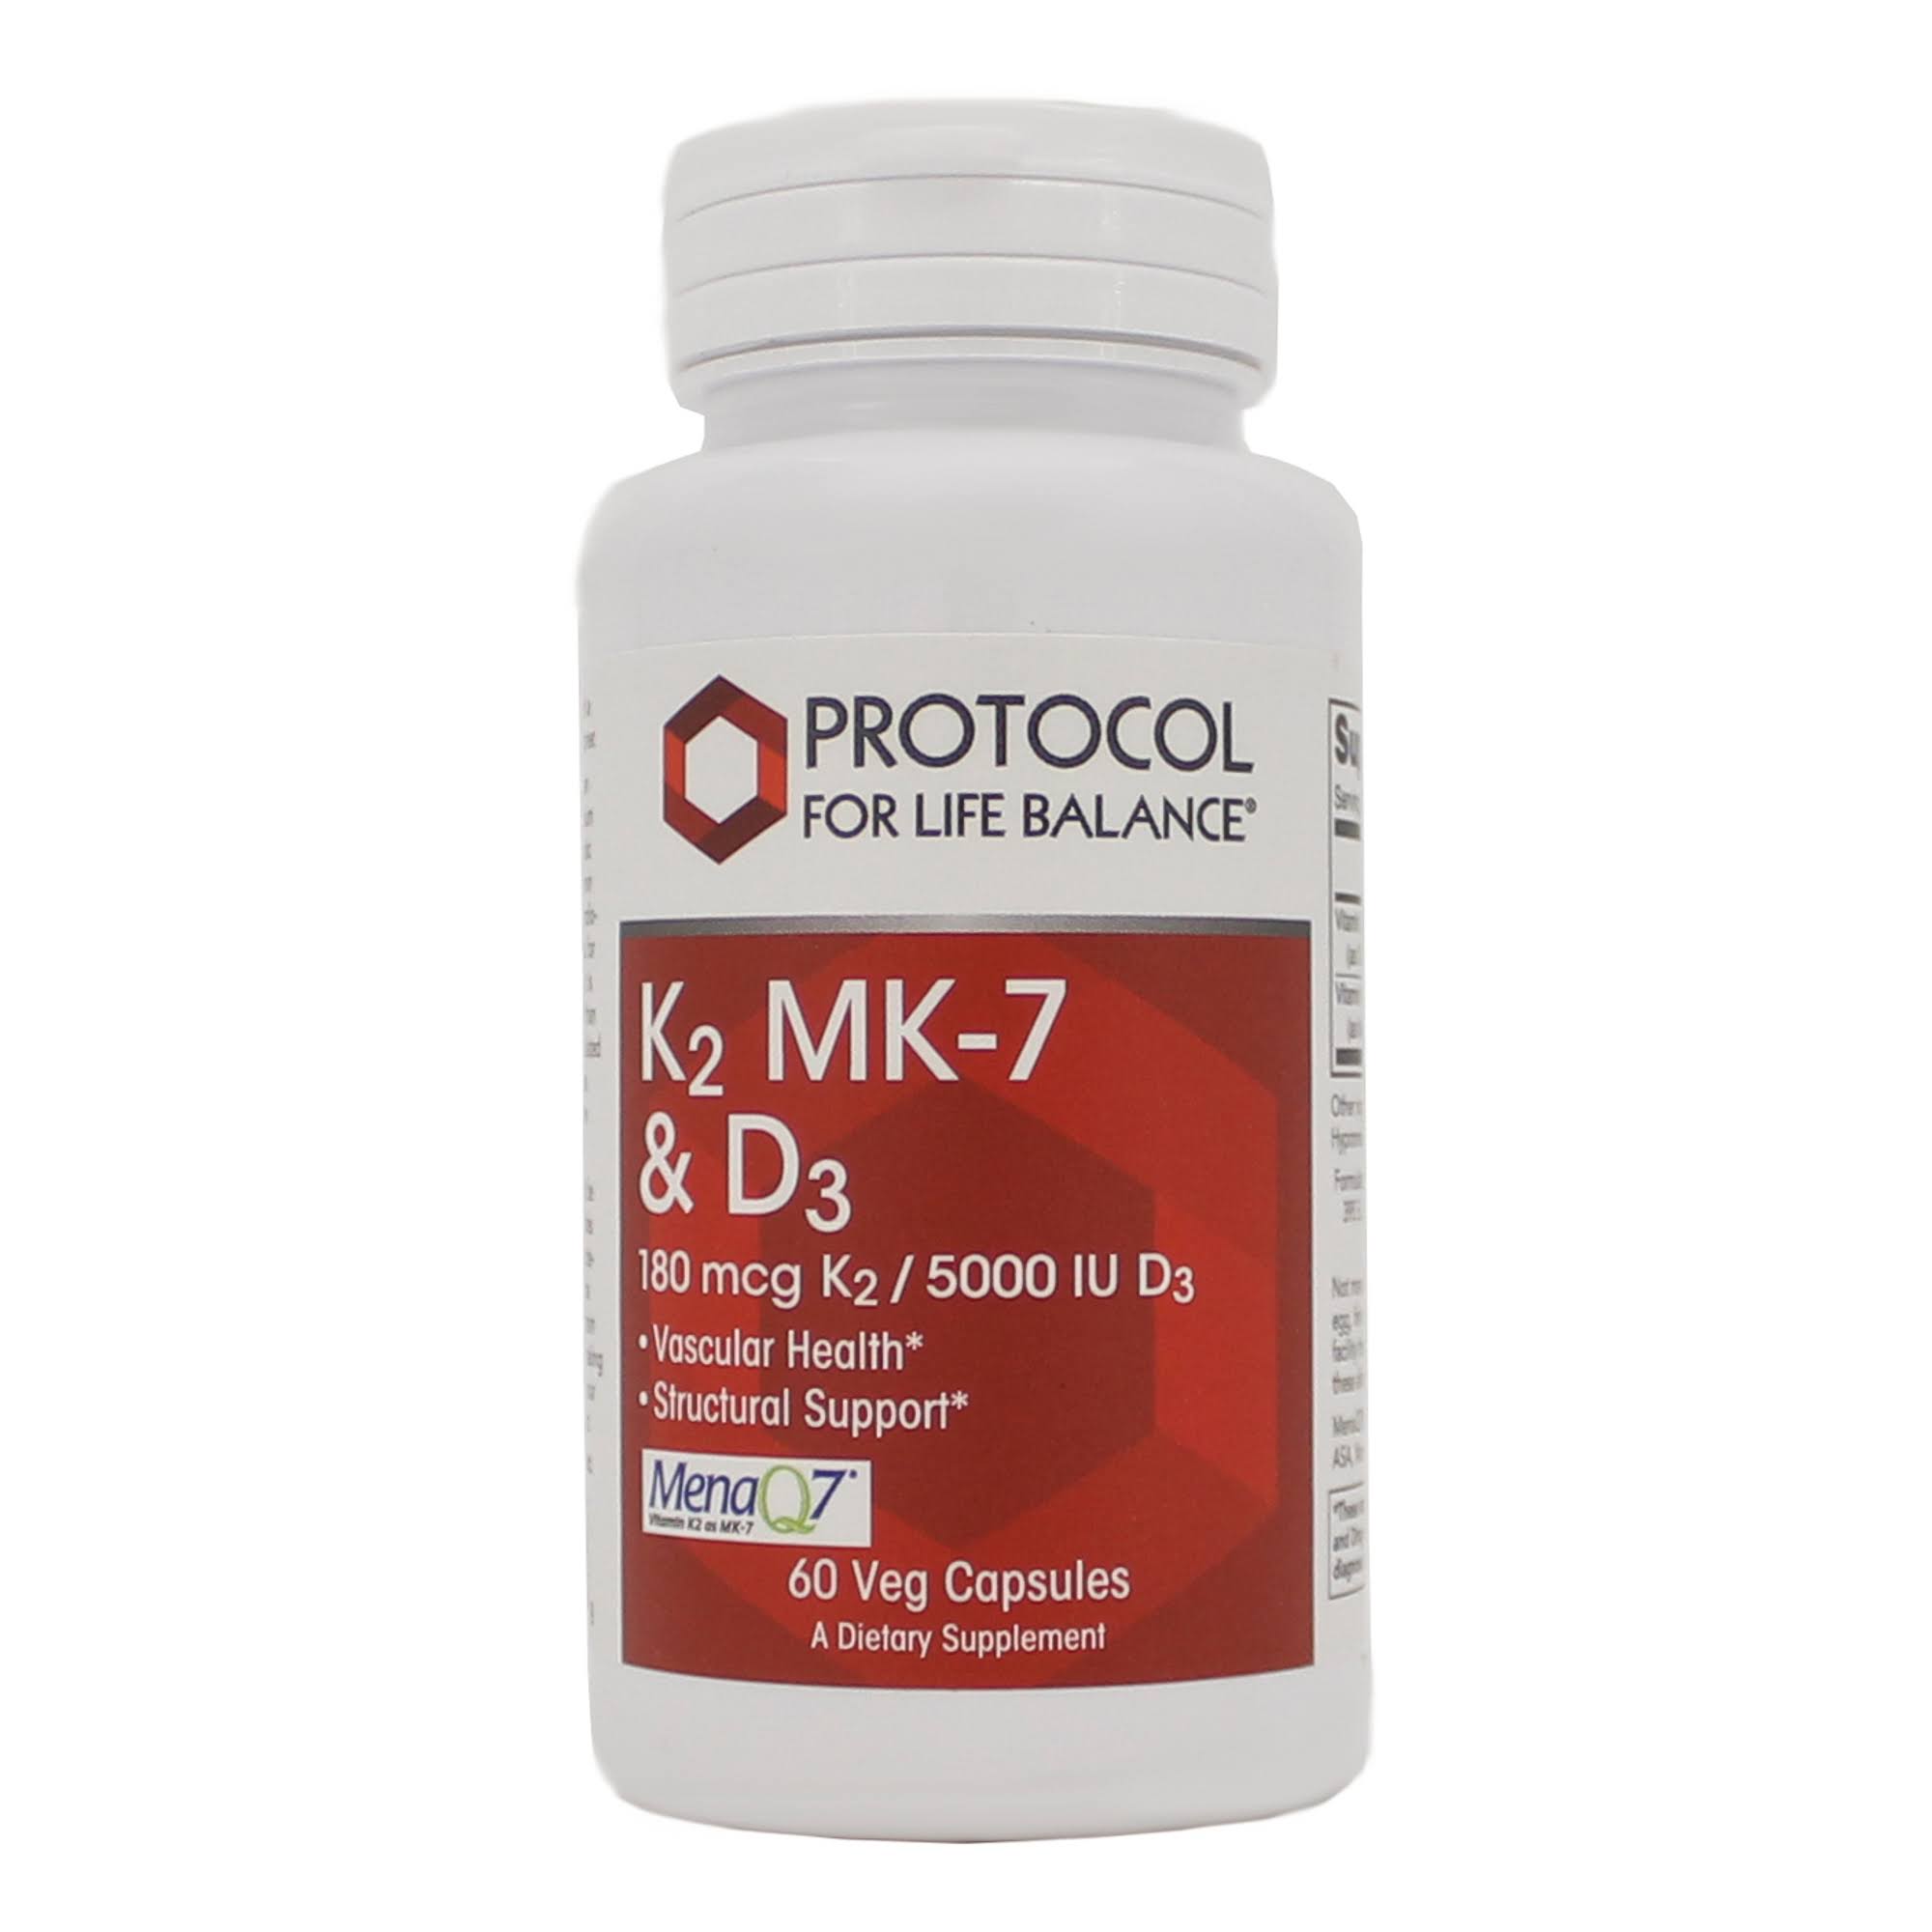 Protocol for Life Balance K2 MK-7 D3